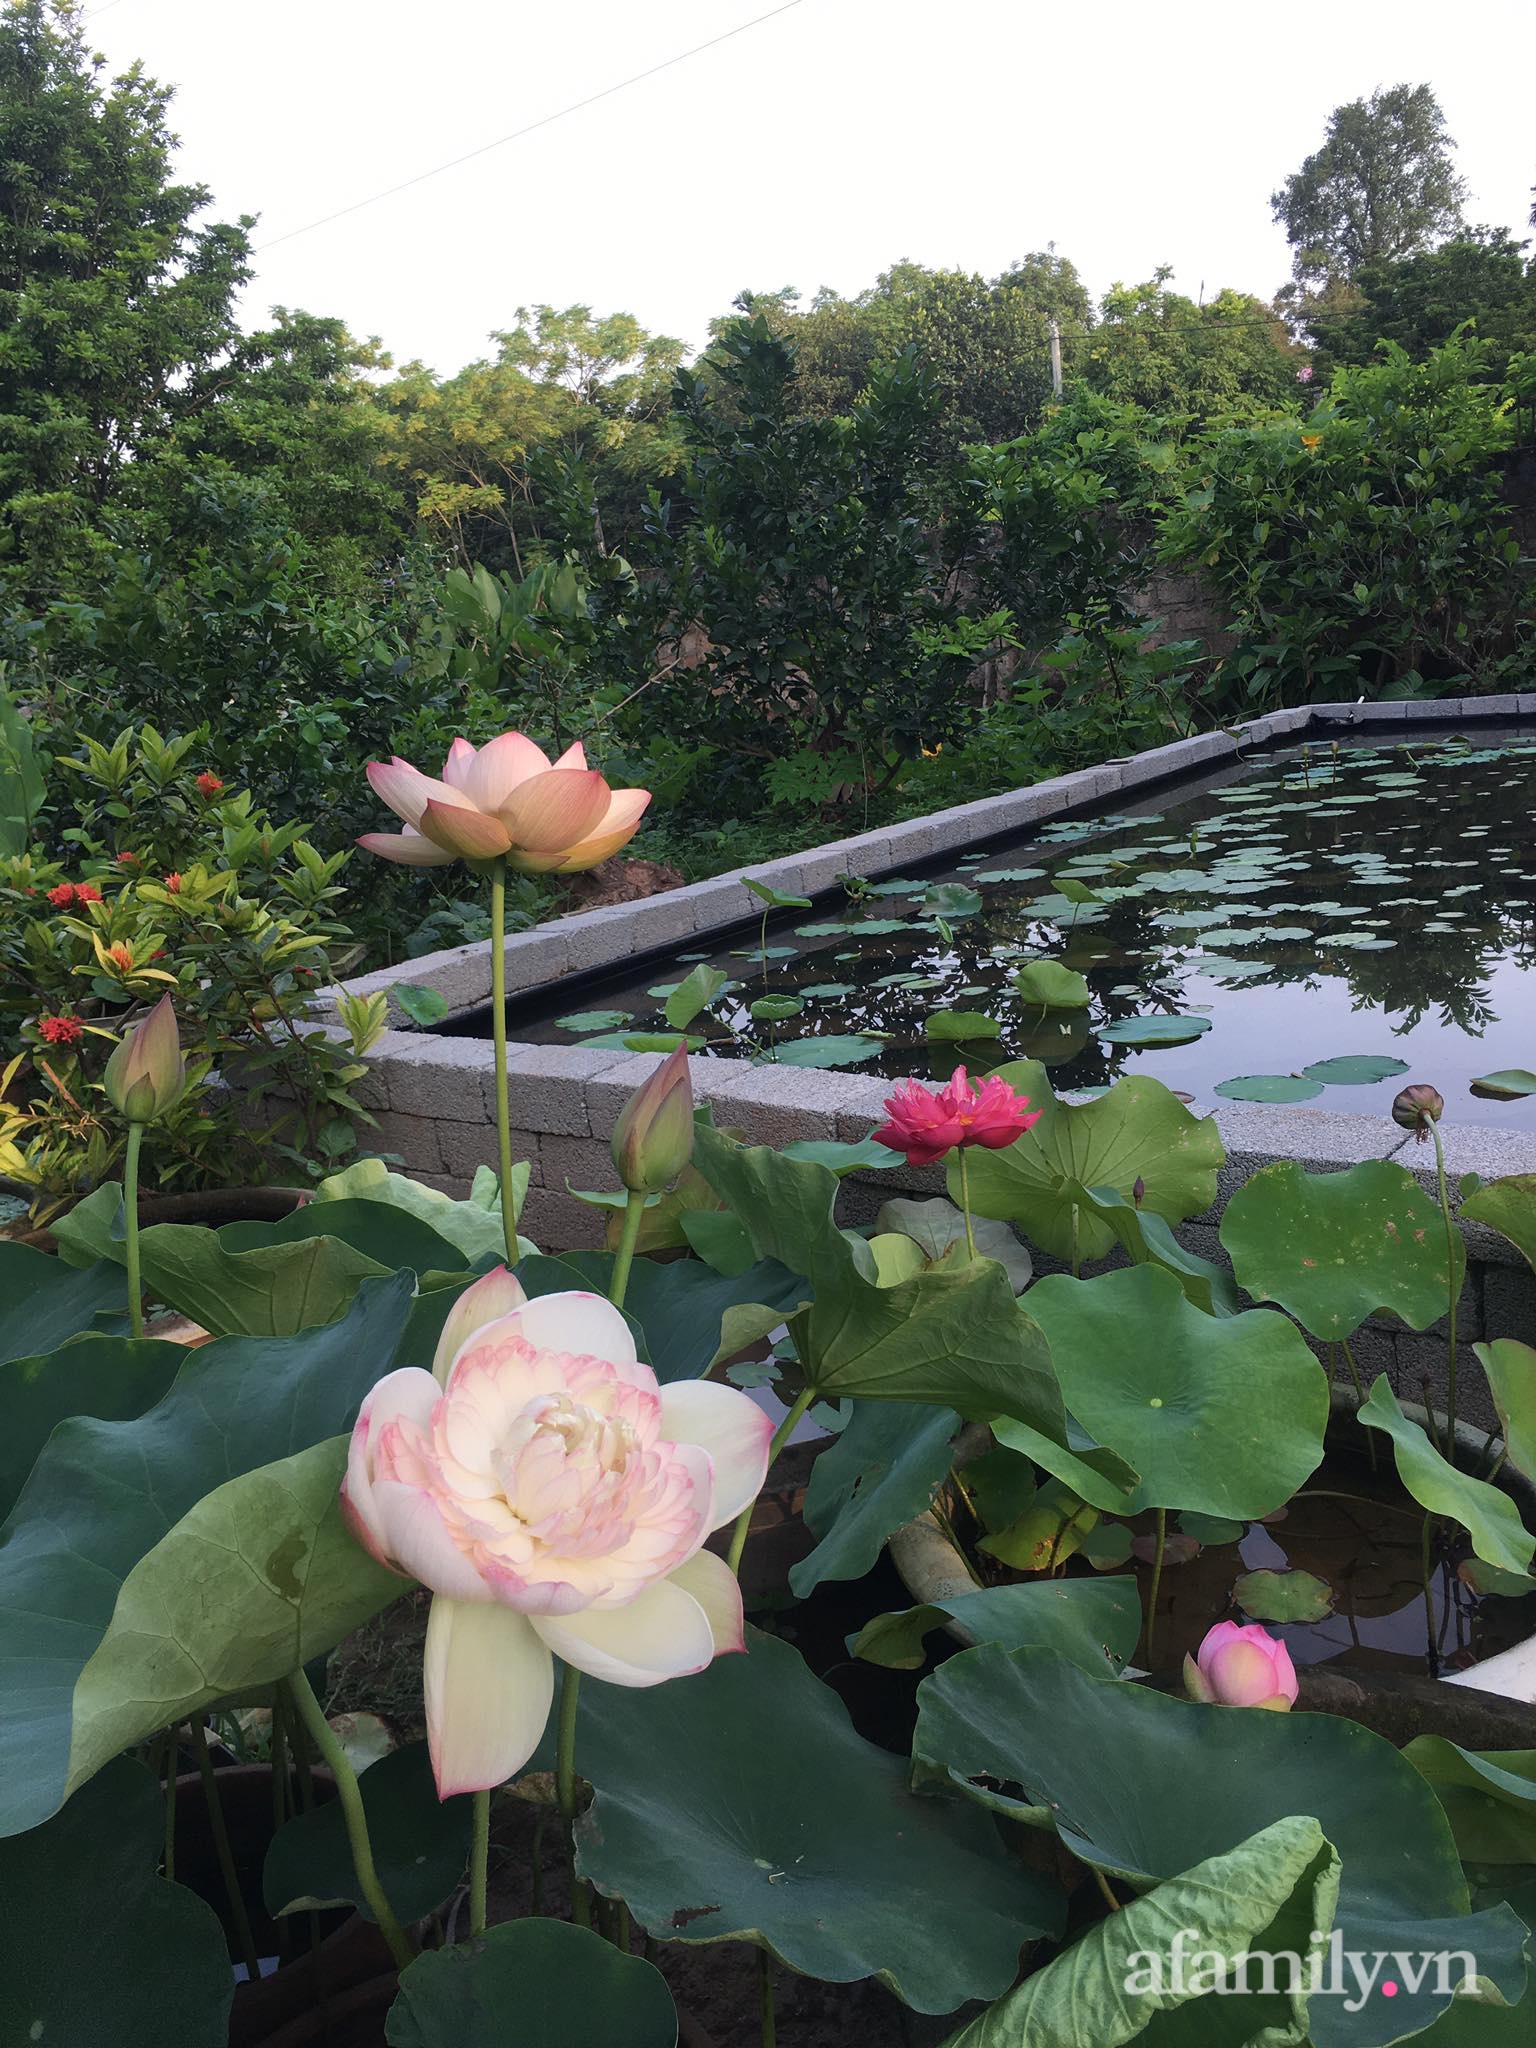 Vườn hoa sen và hoa súng tỏa hương sắc rực rỡ ở Hà Nam